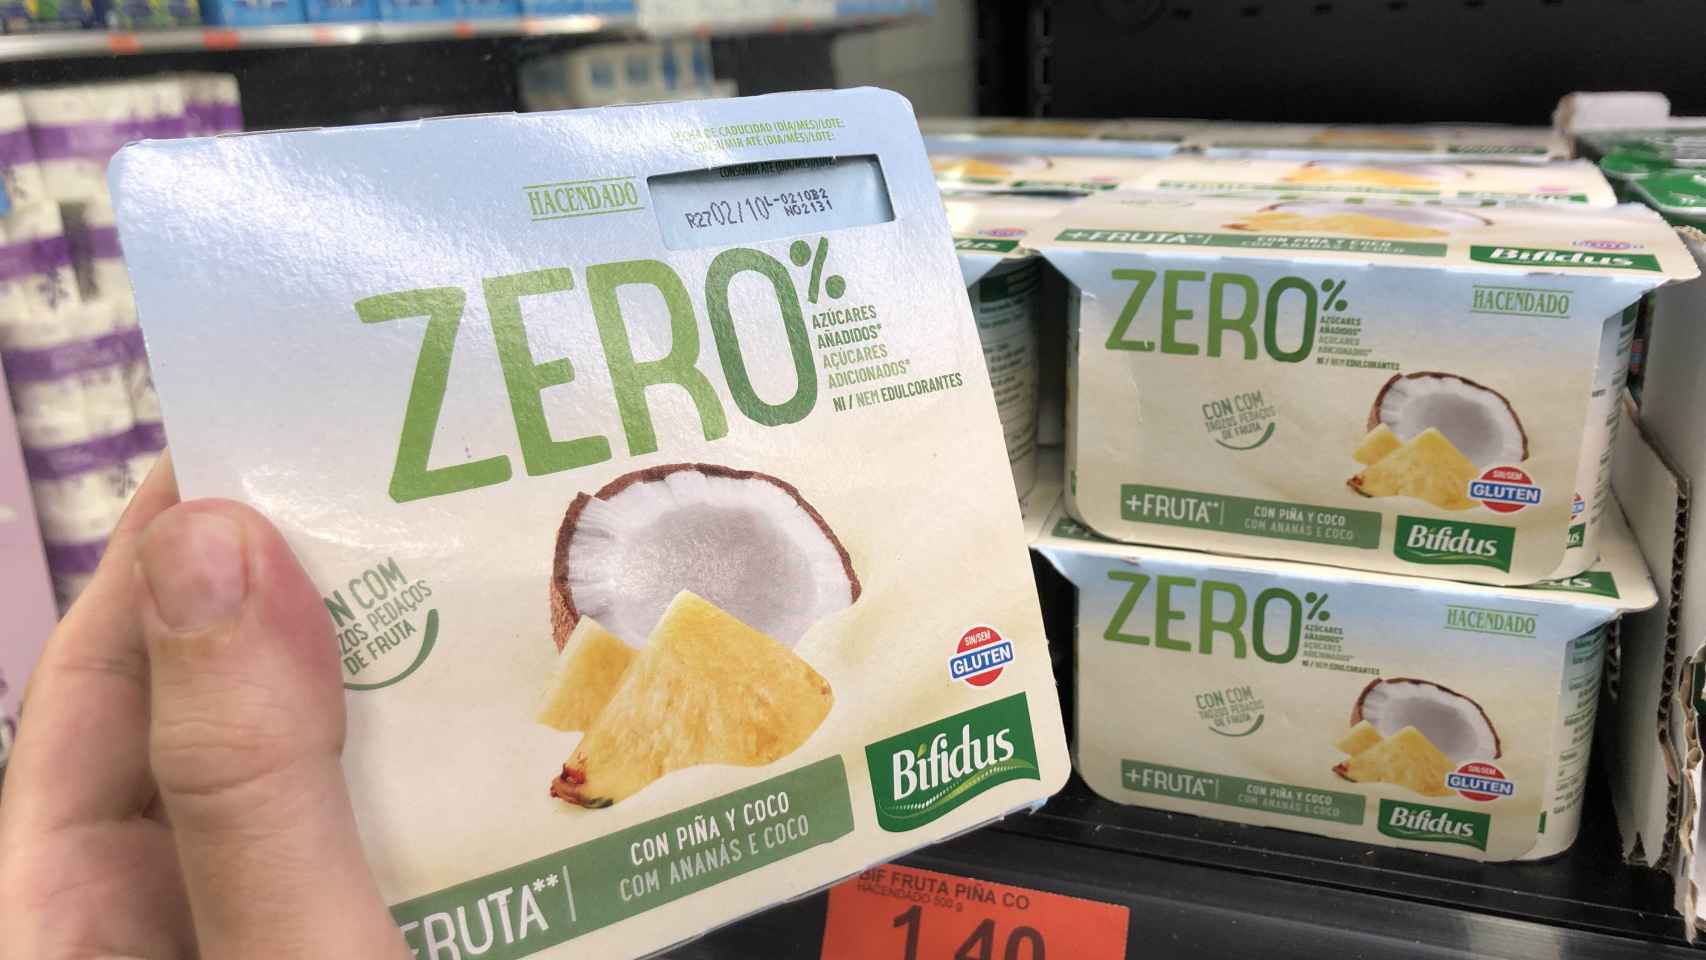 Bífidus Zero%, el último producto estrella de Mercadona que se fabrica en Toledo